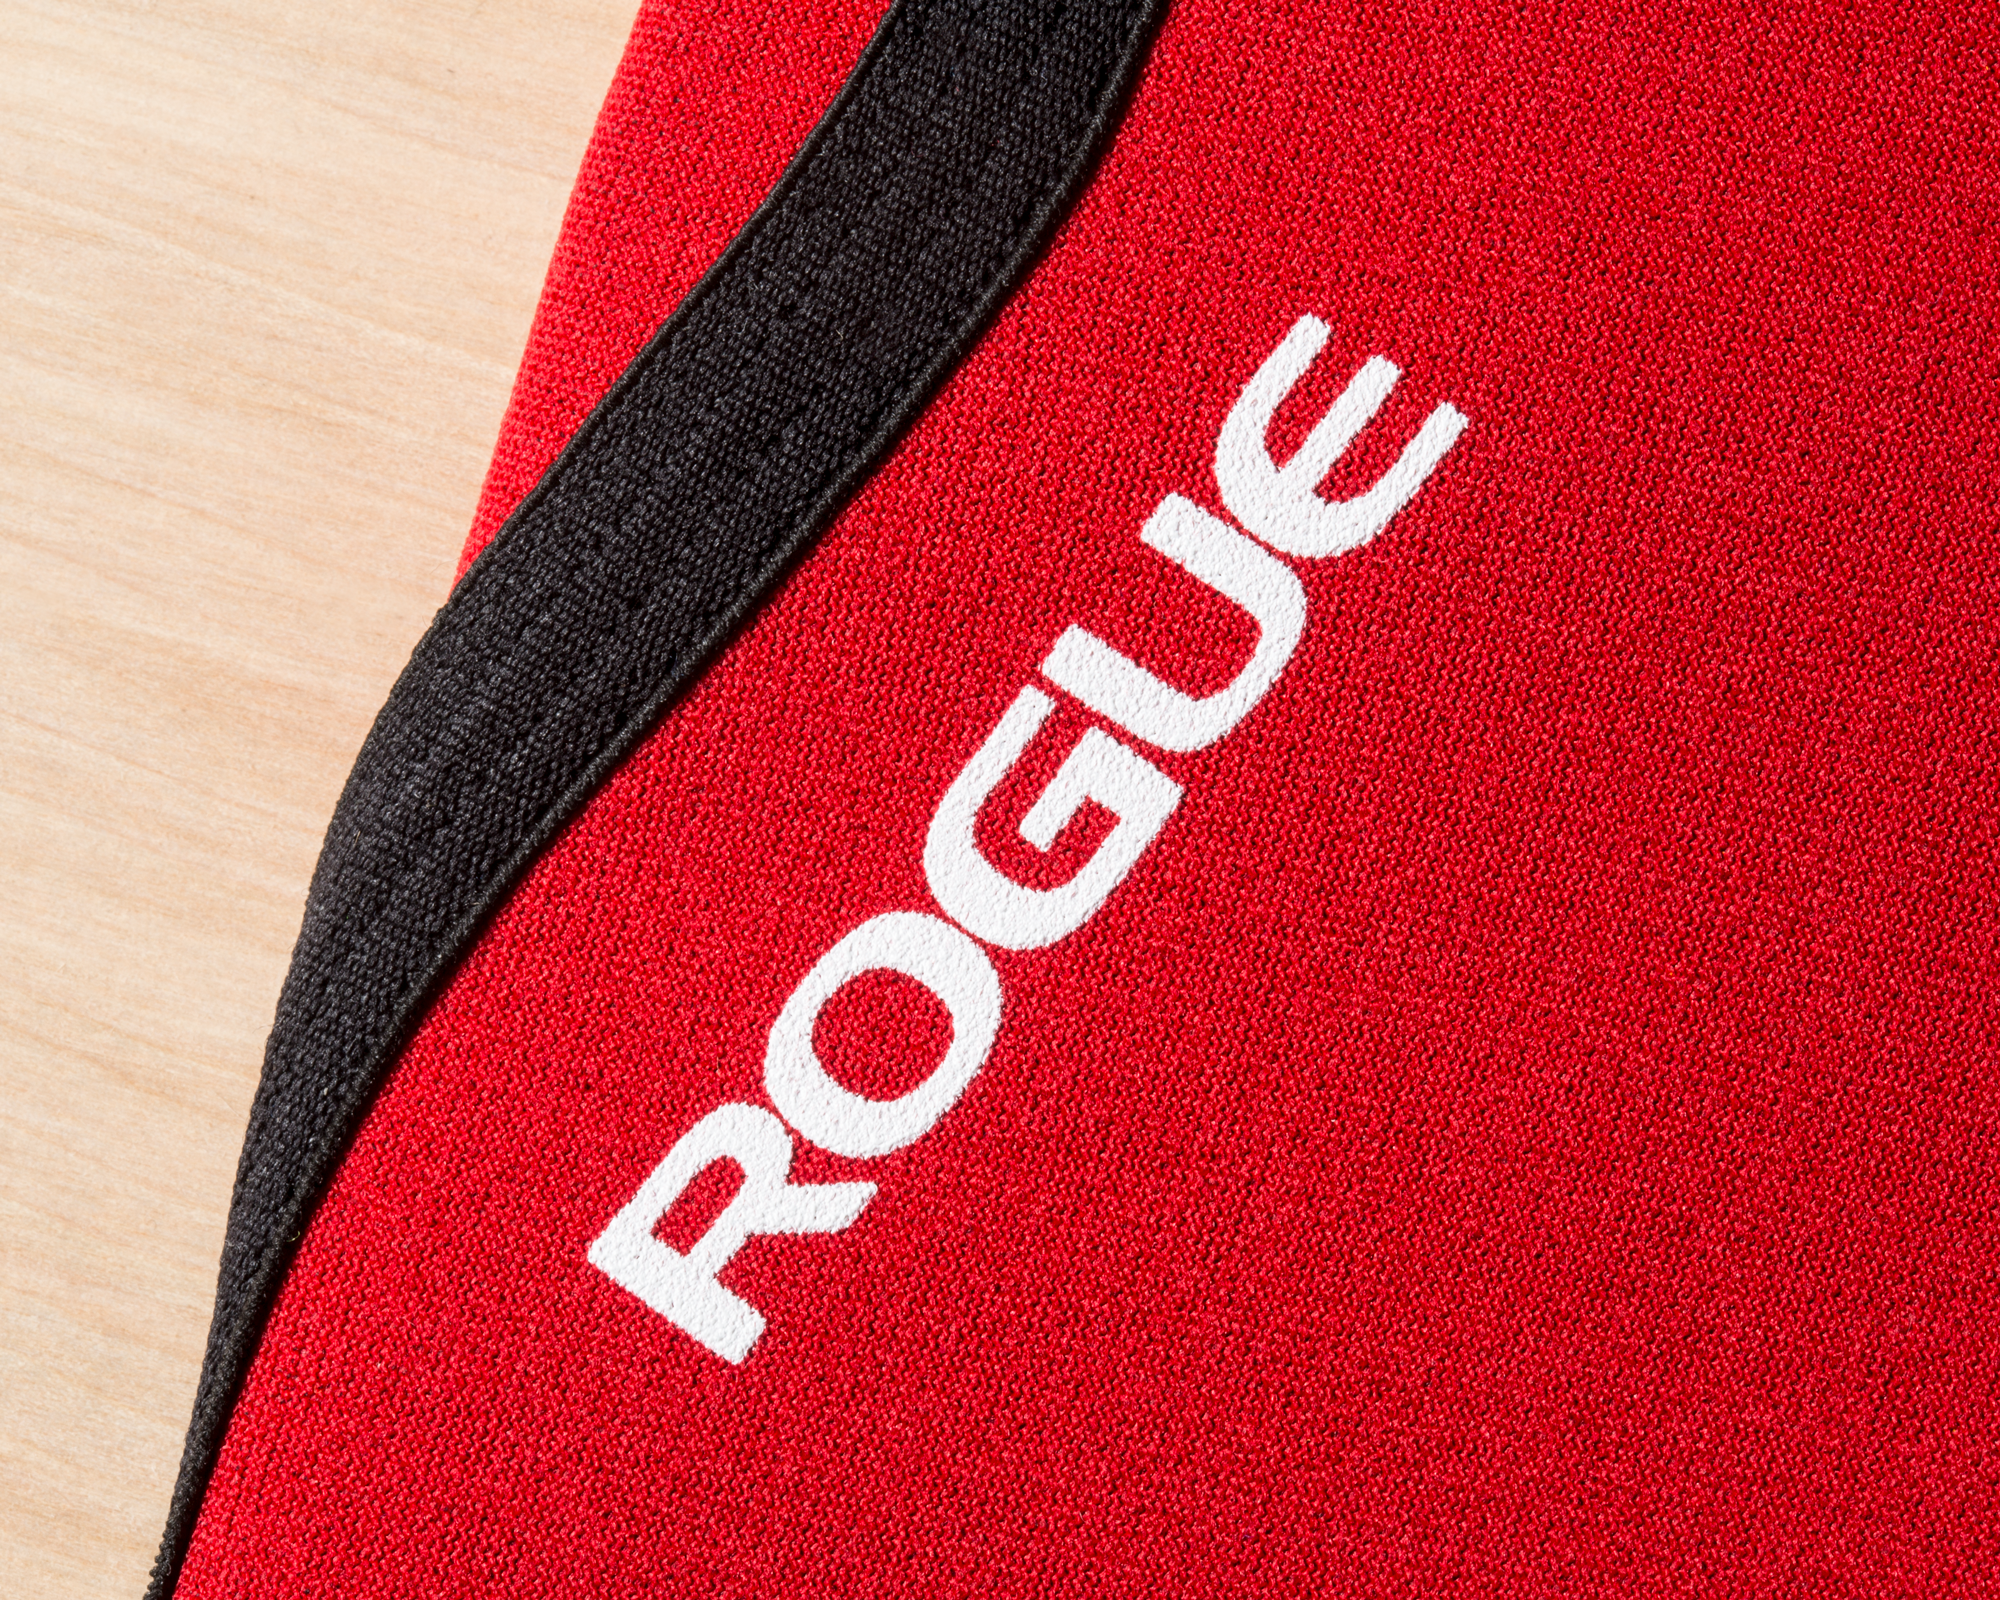 Rogue 3MM Knee Sleeve - Pair